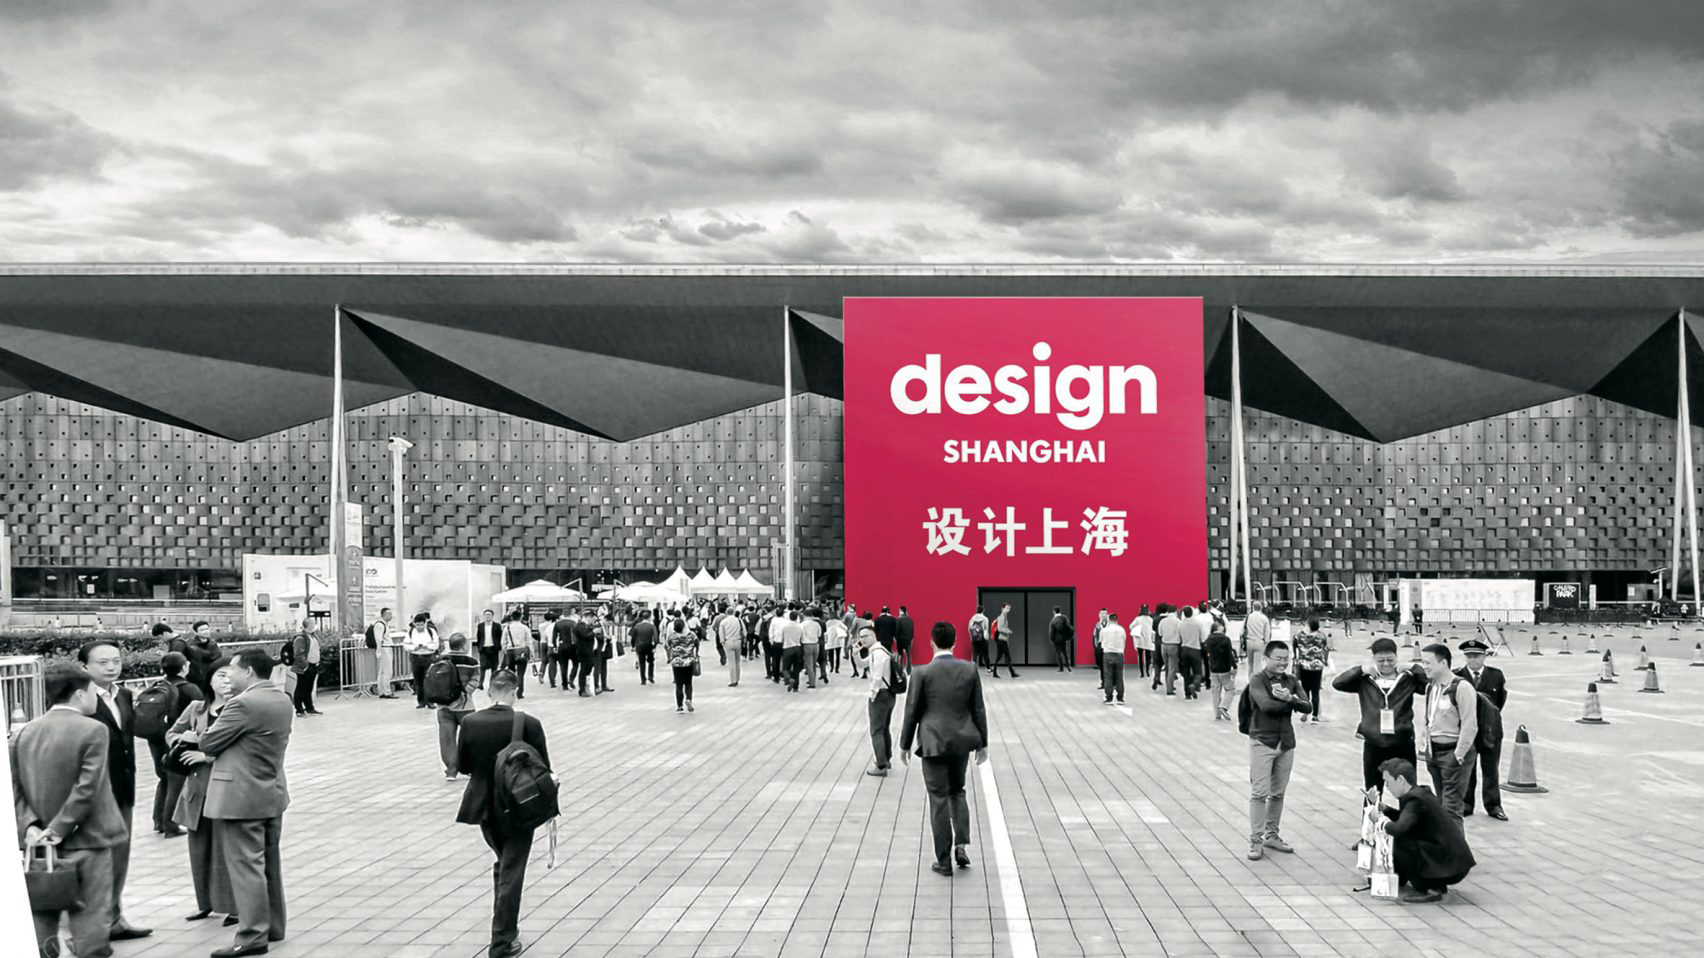 Design Shanghai image